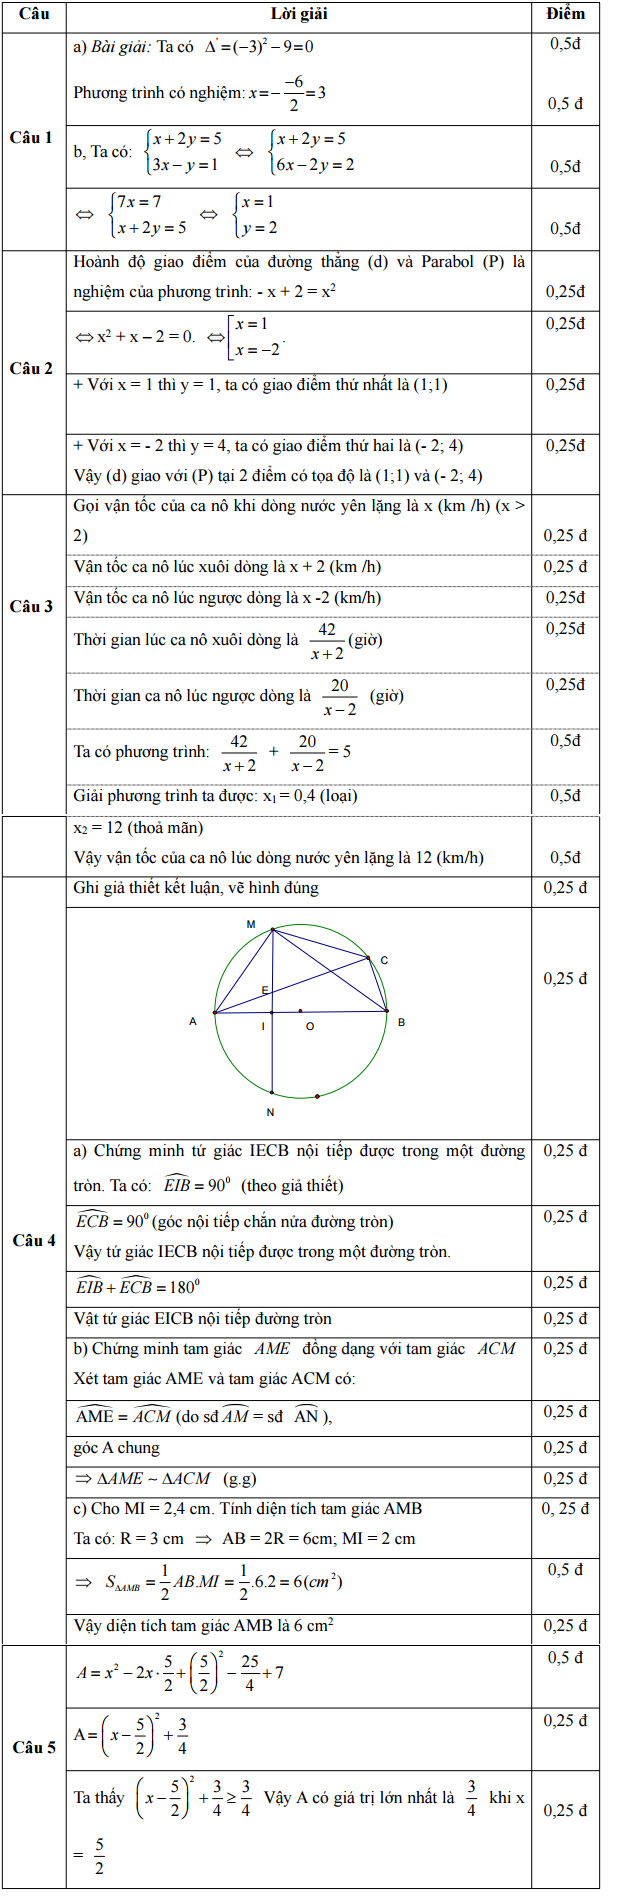 Đáp án đề thi minh họa môn toán năm 2017 vào THPT tỉnh Tuyên Quang